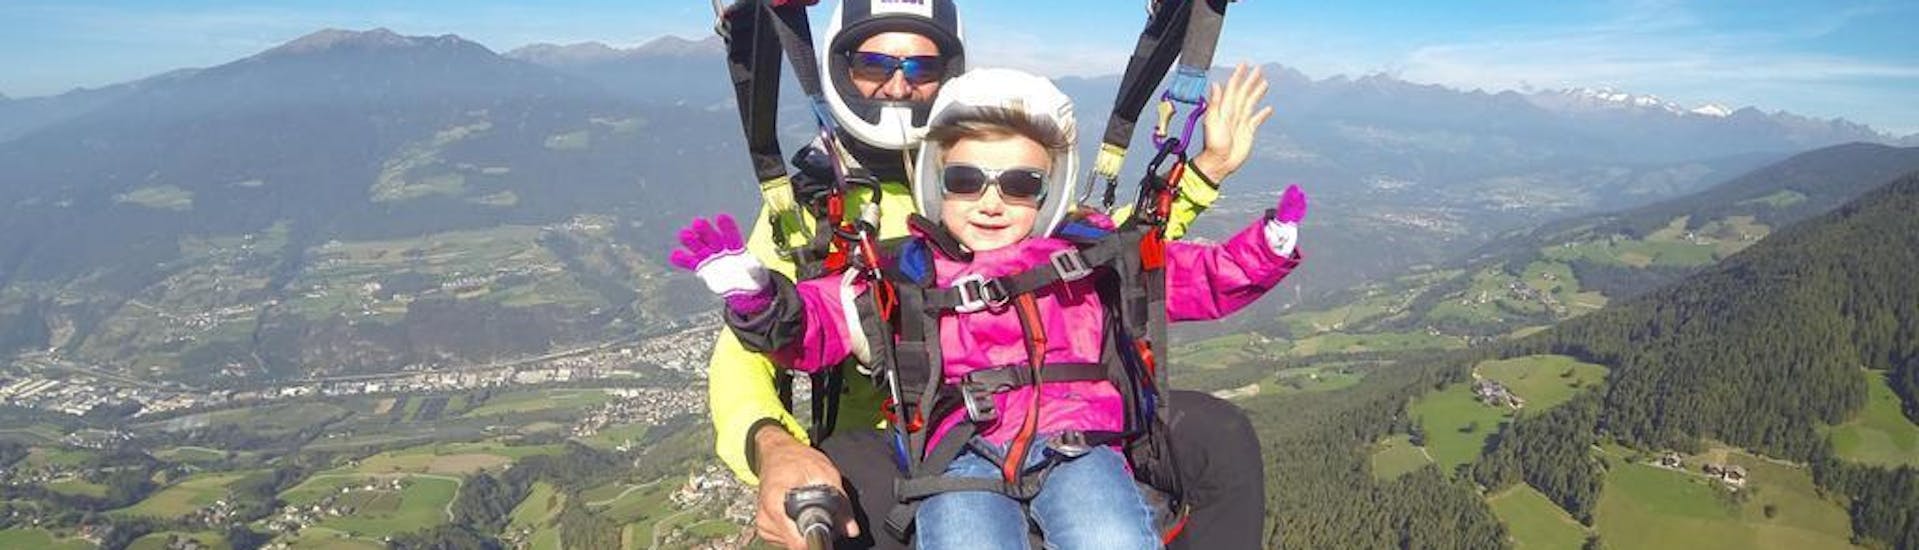 Tandem Paragliding von der Plose für Kinder.